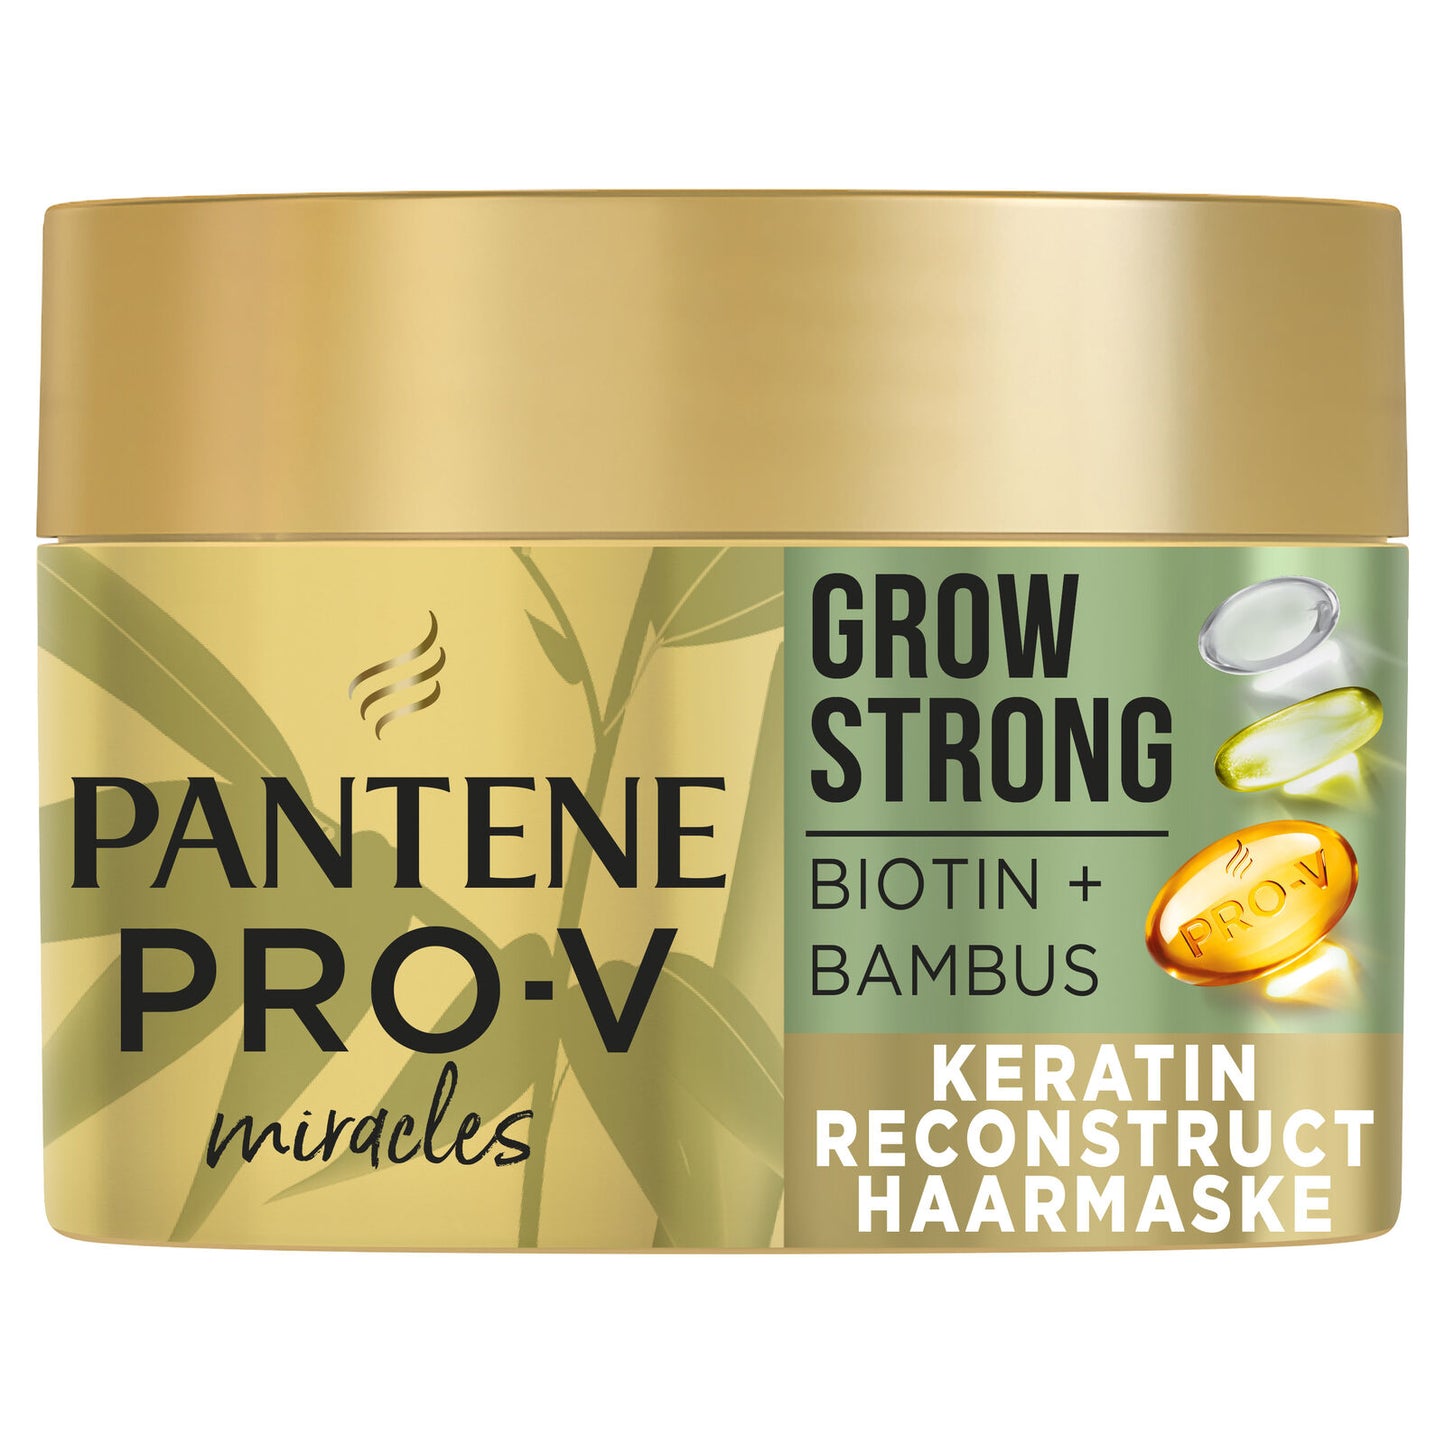 Pantene Pro-V Grow Strong Masque 225ml